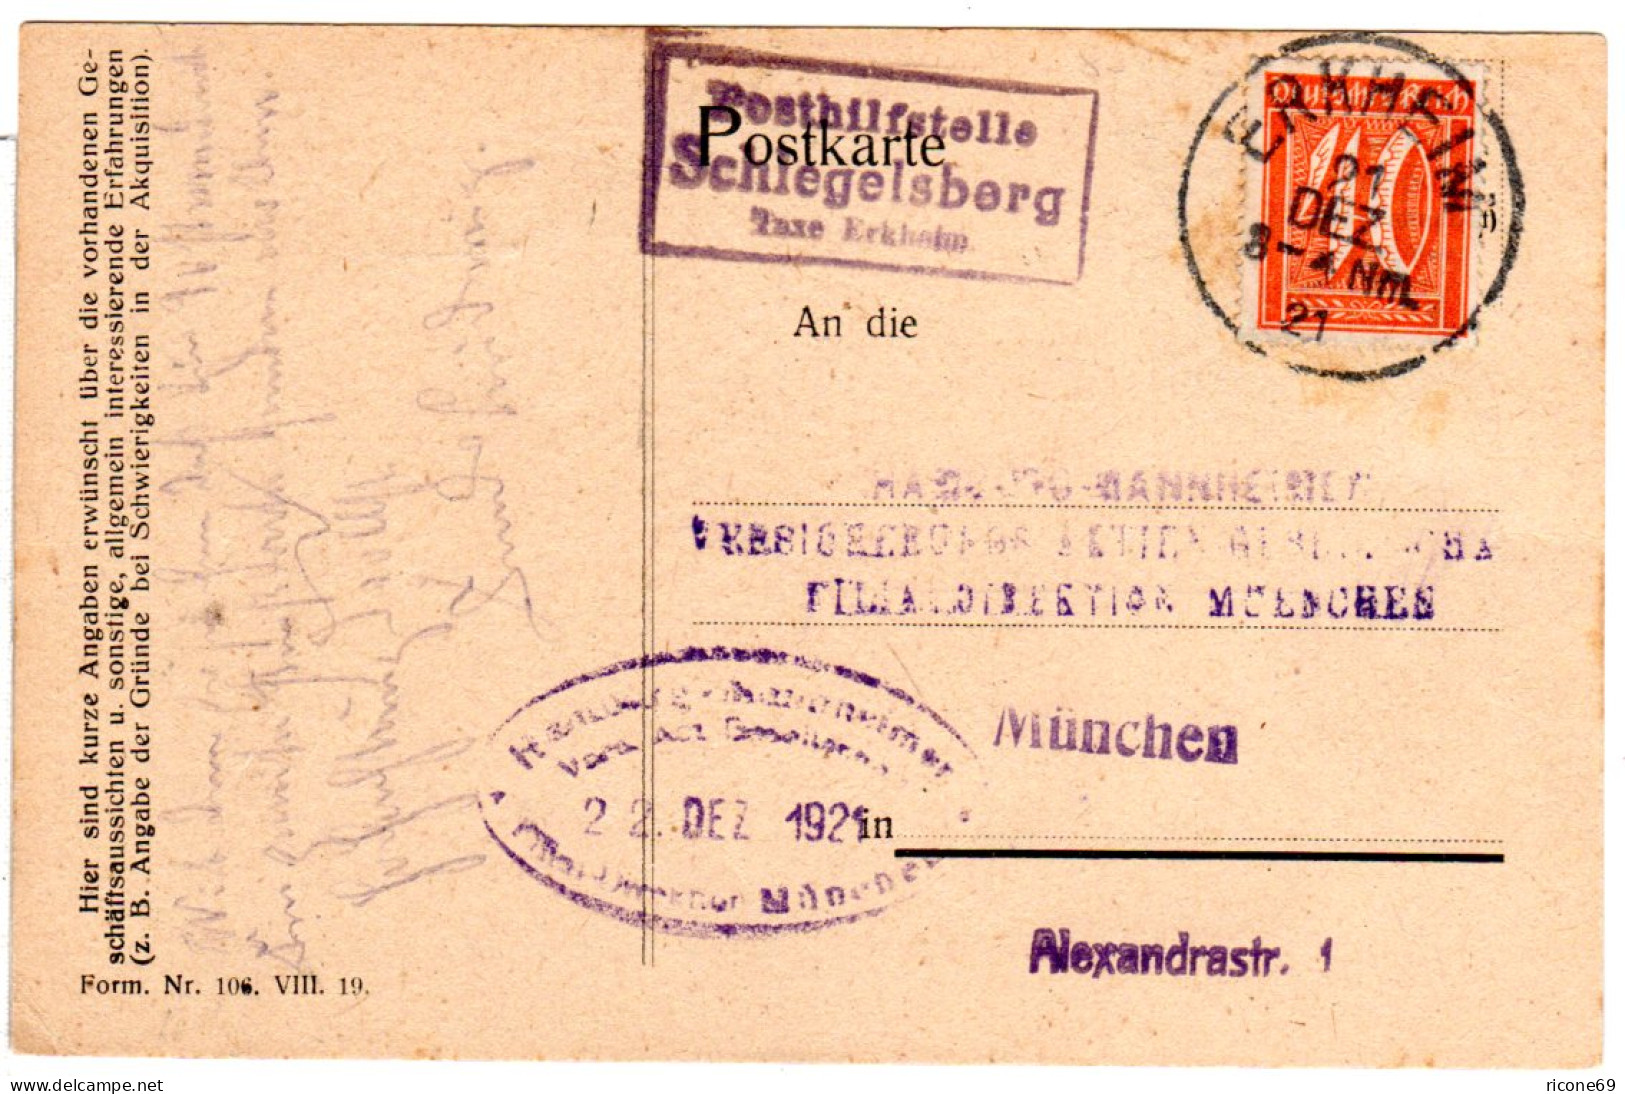 DR 1921, Bayern Posthilfstelle SCHLEGELSBERG Taxe Erkheim Auf Karte M. 40 Pf.  - Covers & Documents